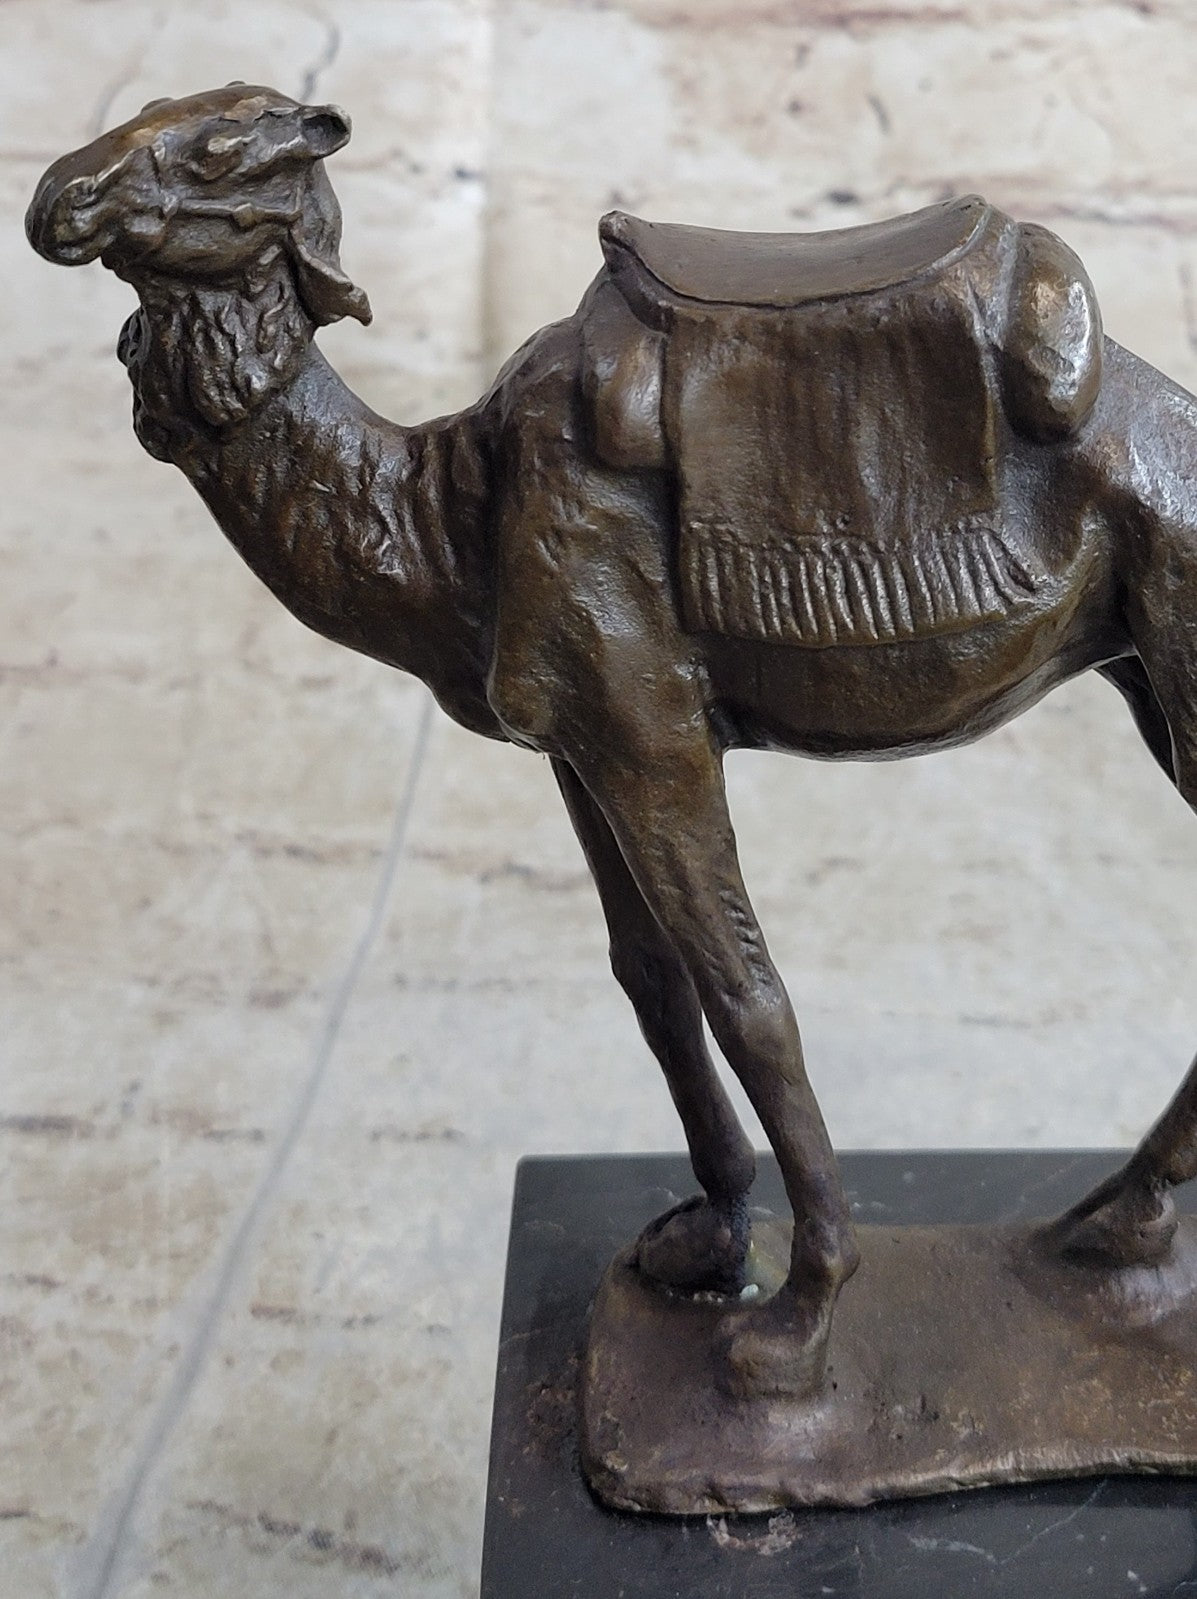 Handcrafted bronze sculpture SALE Marble Deco Art Desert Journey Camel Figurine